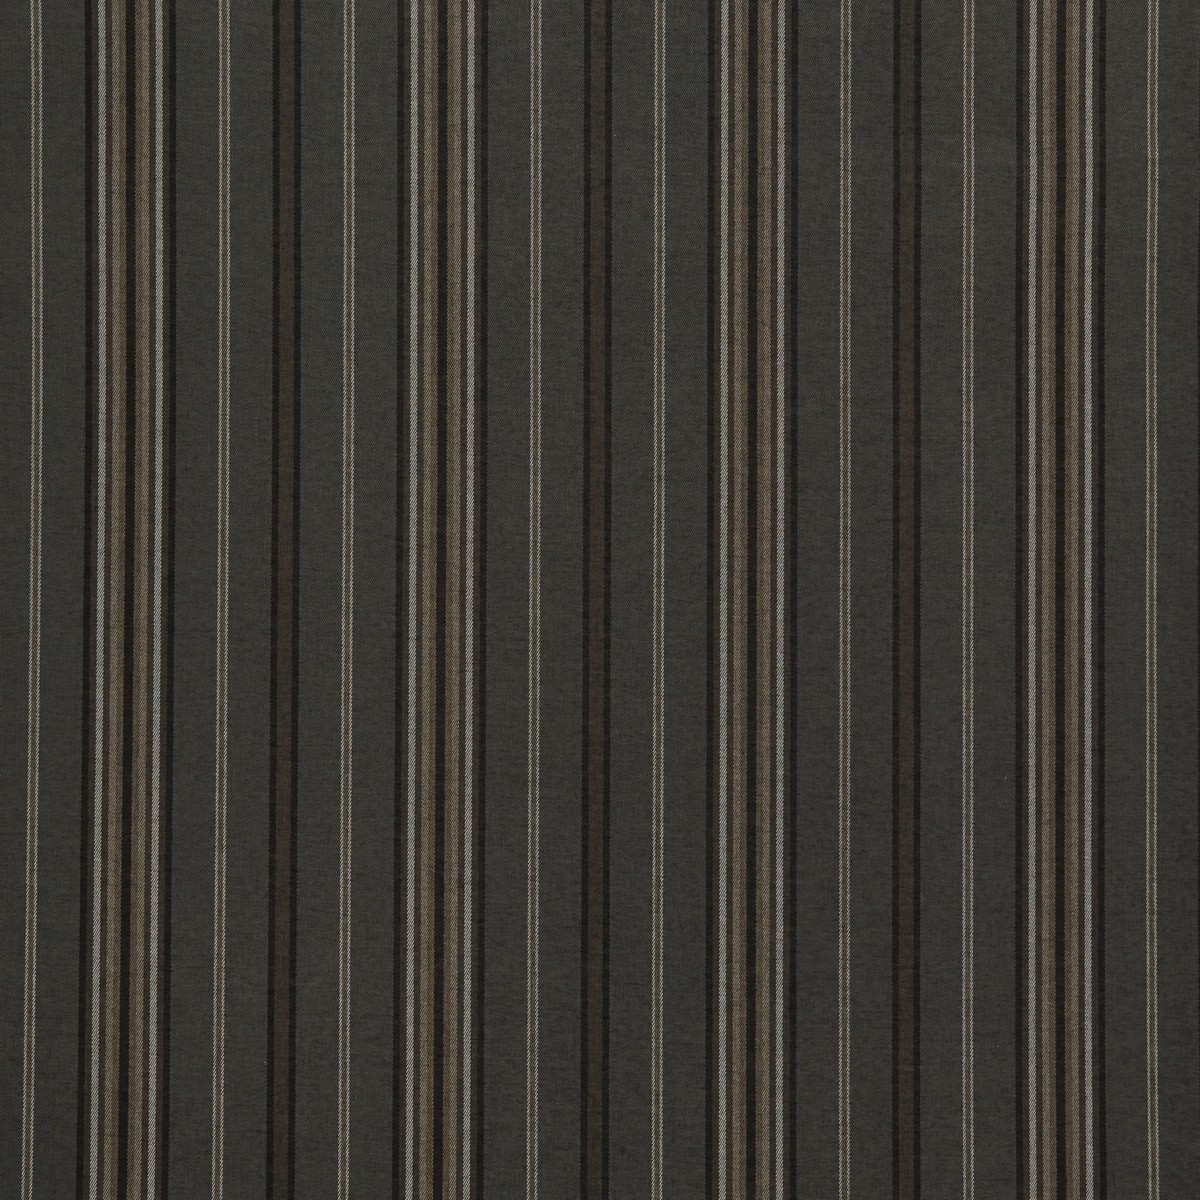 Haworth Charcoal Fabric by iLiv